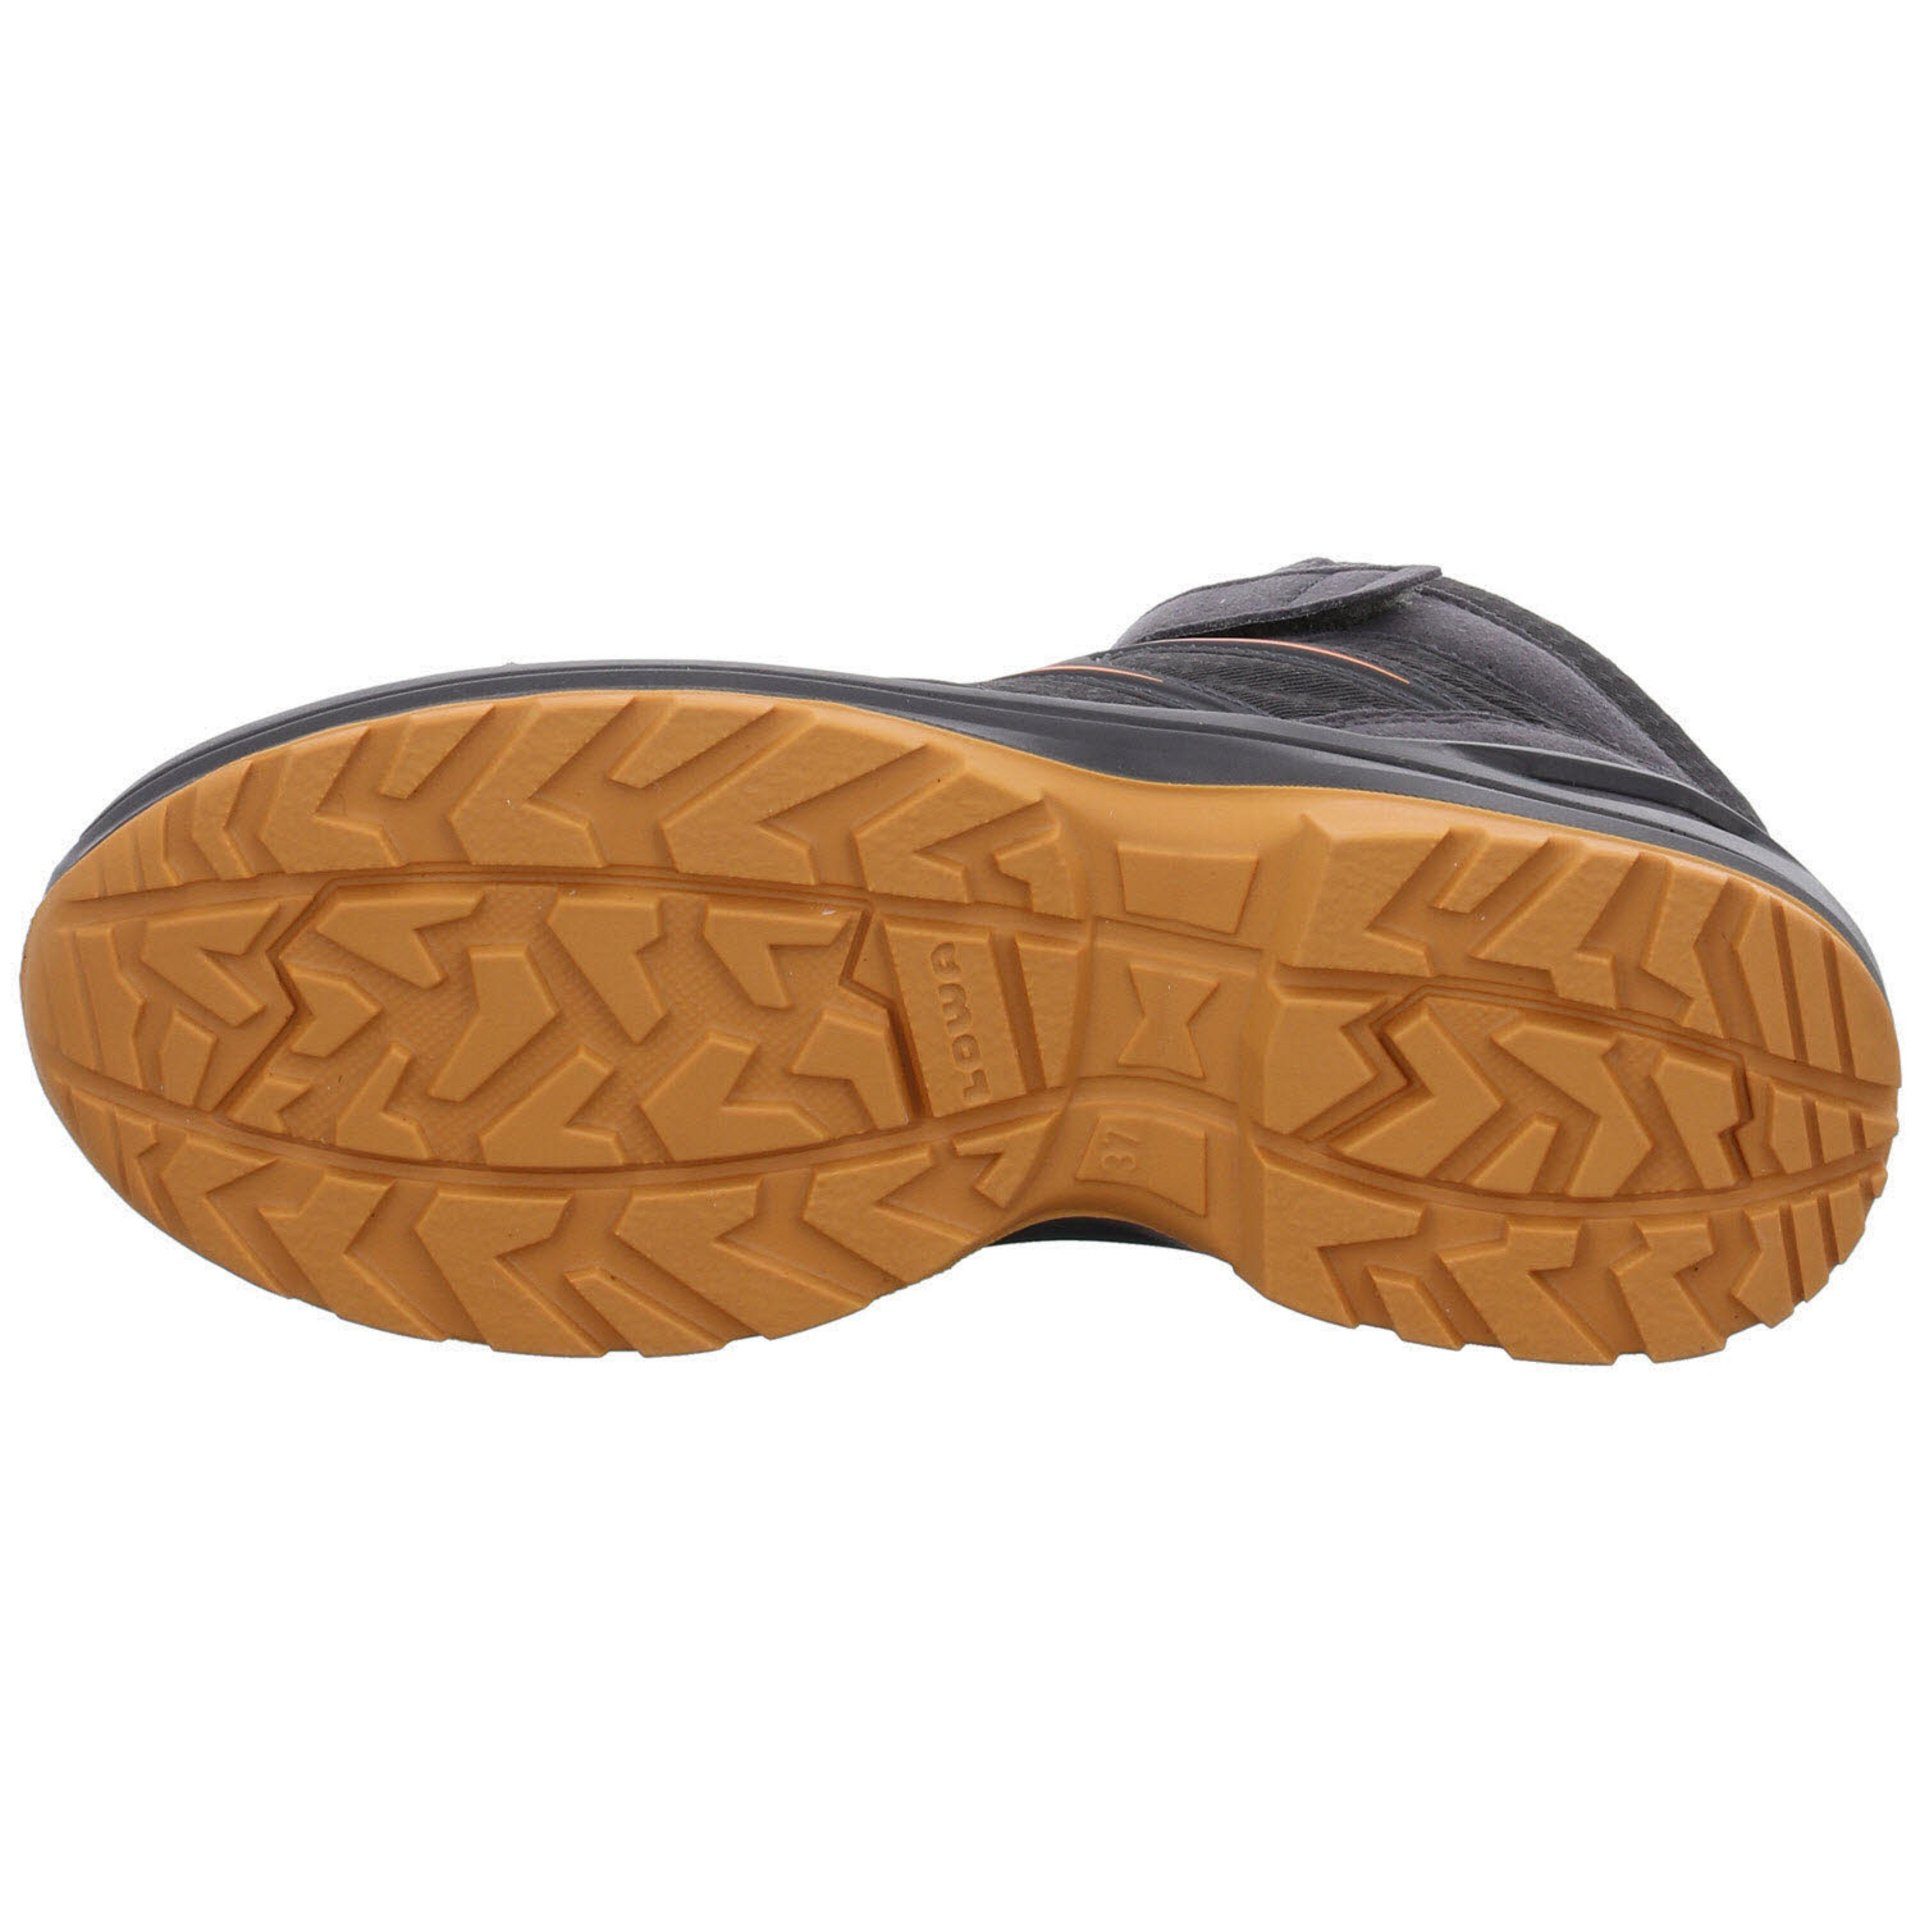 Boots GTX Schuhe Jungen Lowa GRAPHIT/MANDARINE Maddox Stiefel Textil Warm Stiefel